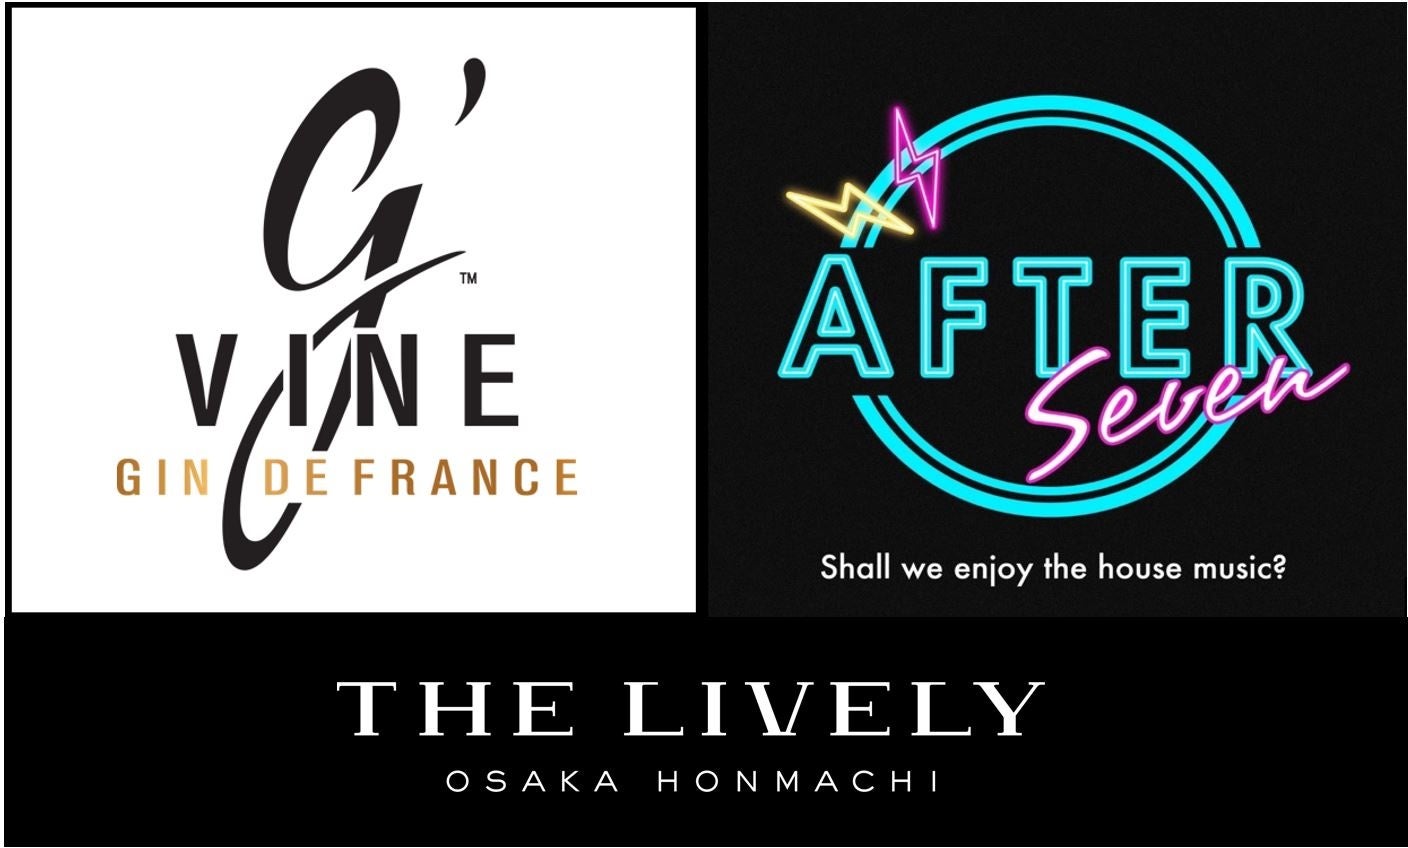 フランス産ジン「G’vine」とコラボしたDJイベント“After Seven”を「THE LIVELY 大阪本町」にて2022年11月20日(日)に開催